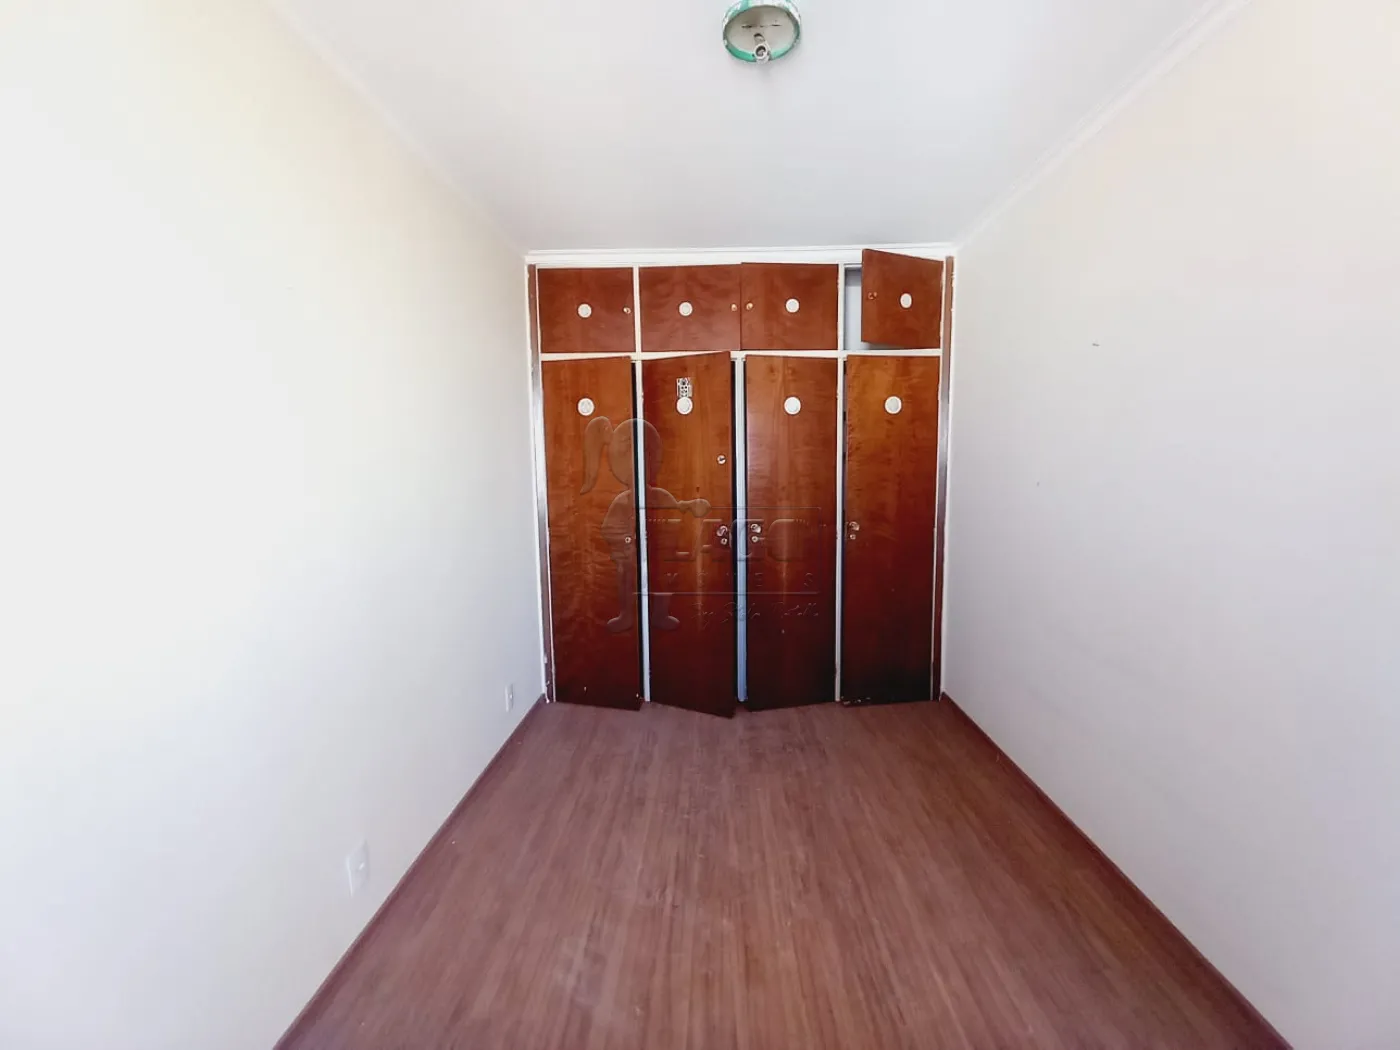 Alugar Apartamento / Padrão em Ribeirão Preto R$ 1.000,00 - Foto 15